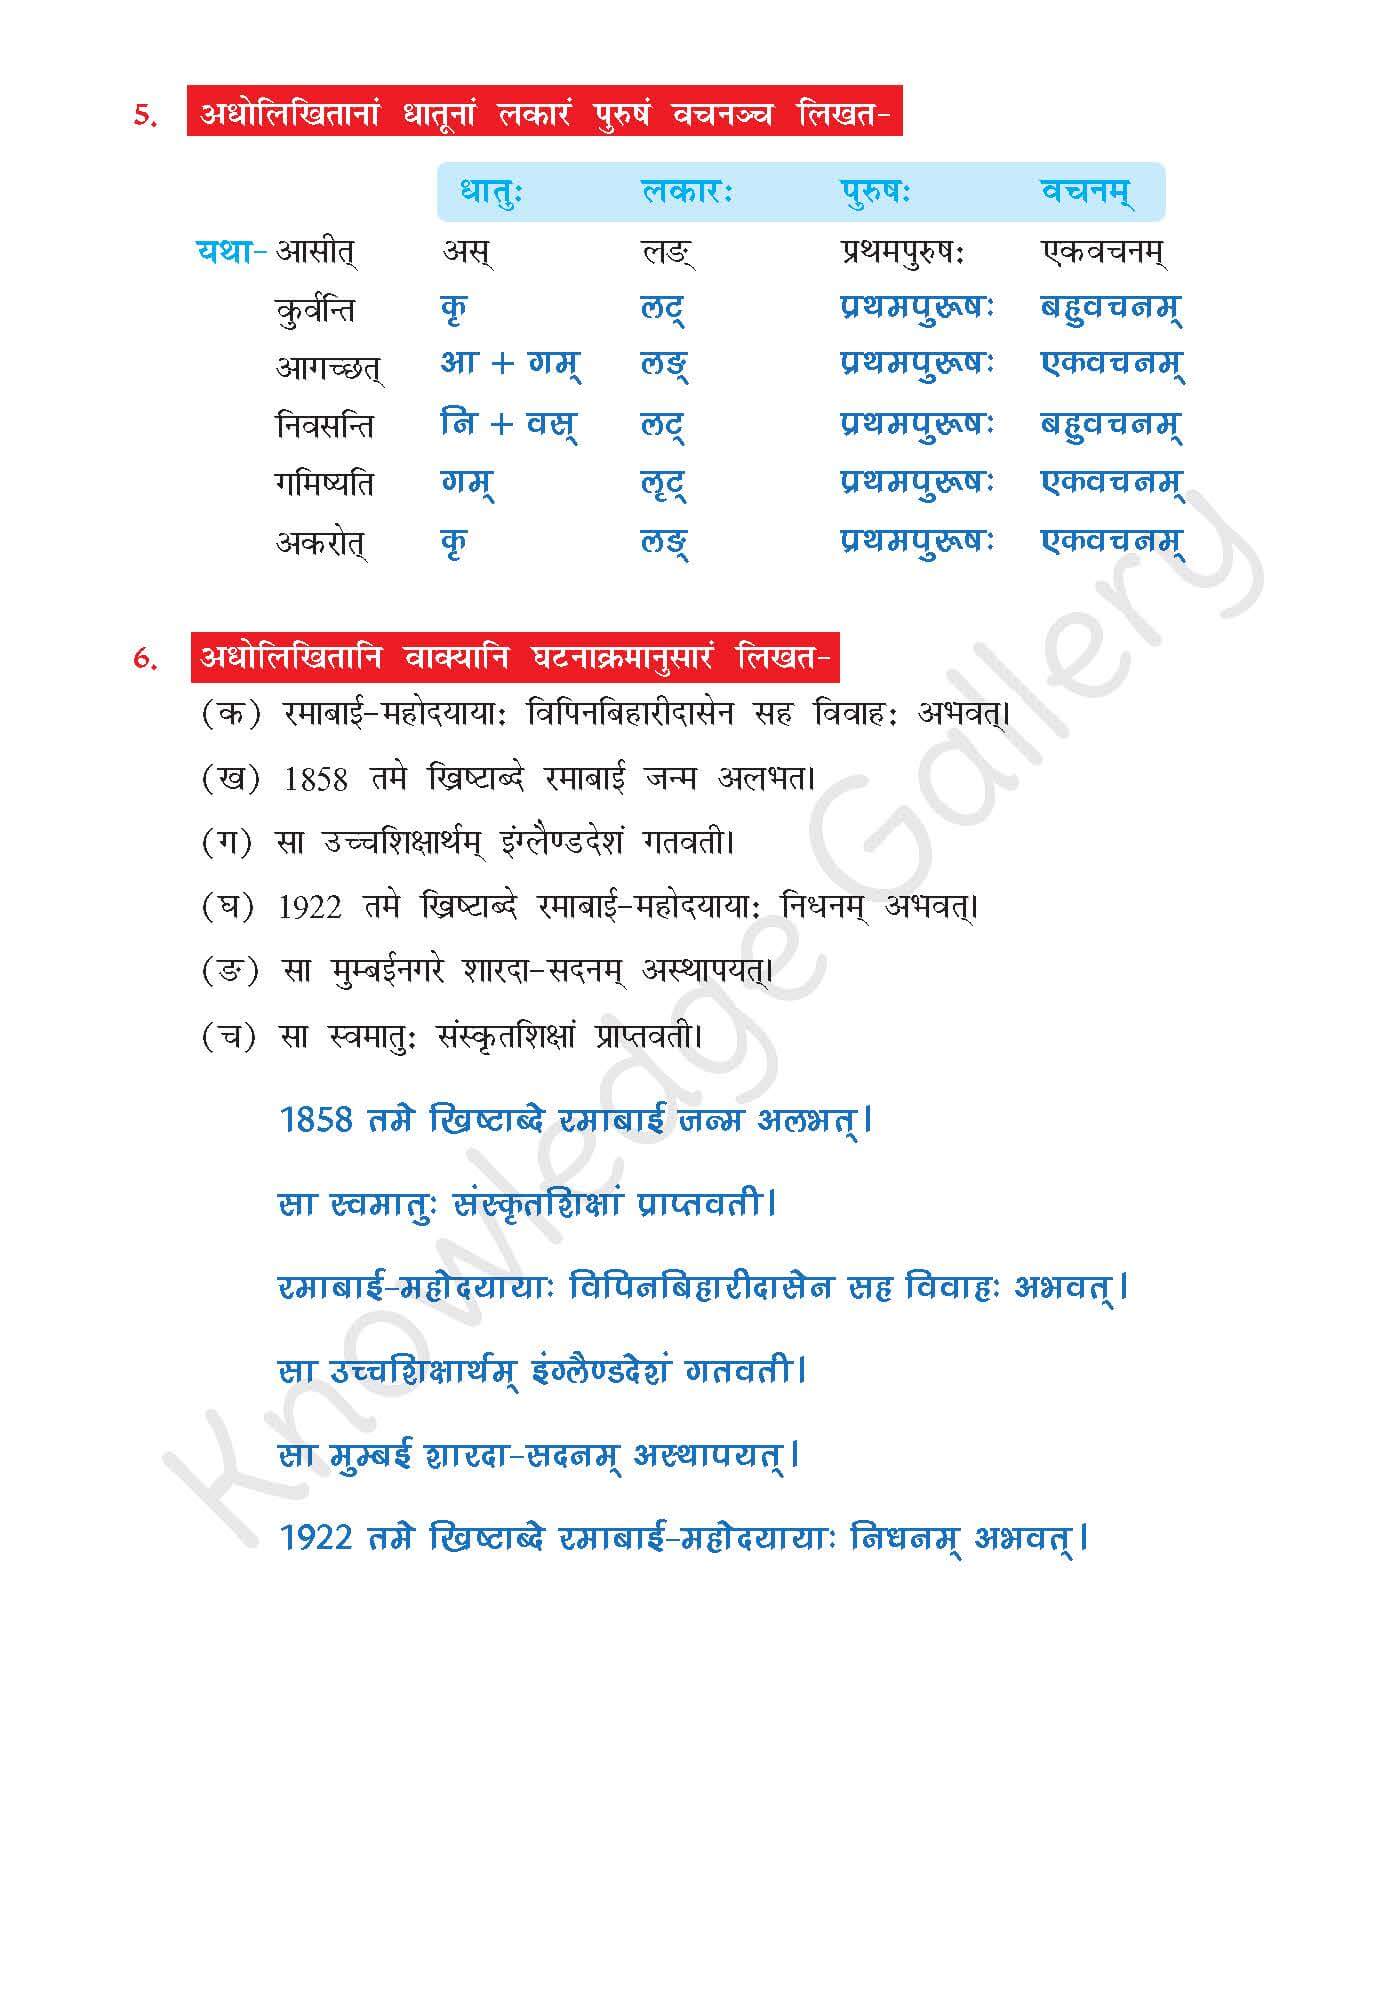 NCERT Solution For Class 7 Sanskrit Chapter 4 part 6